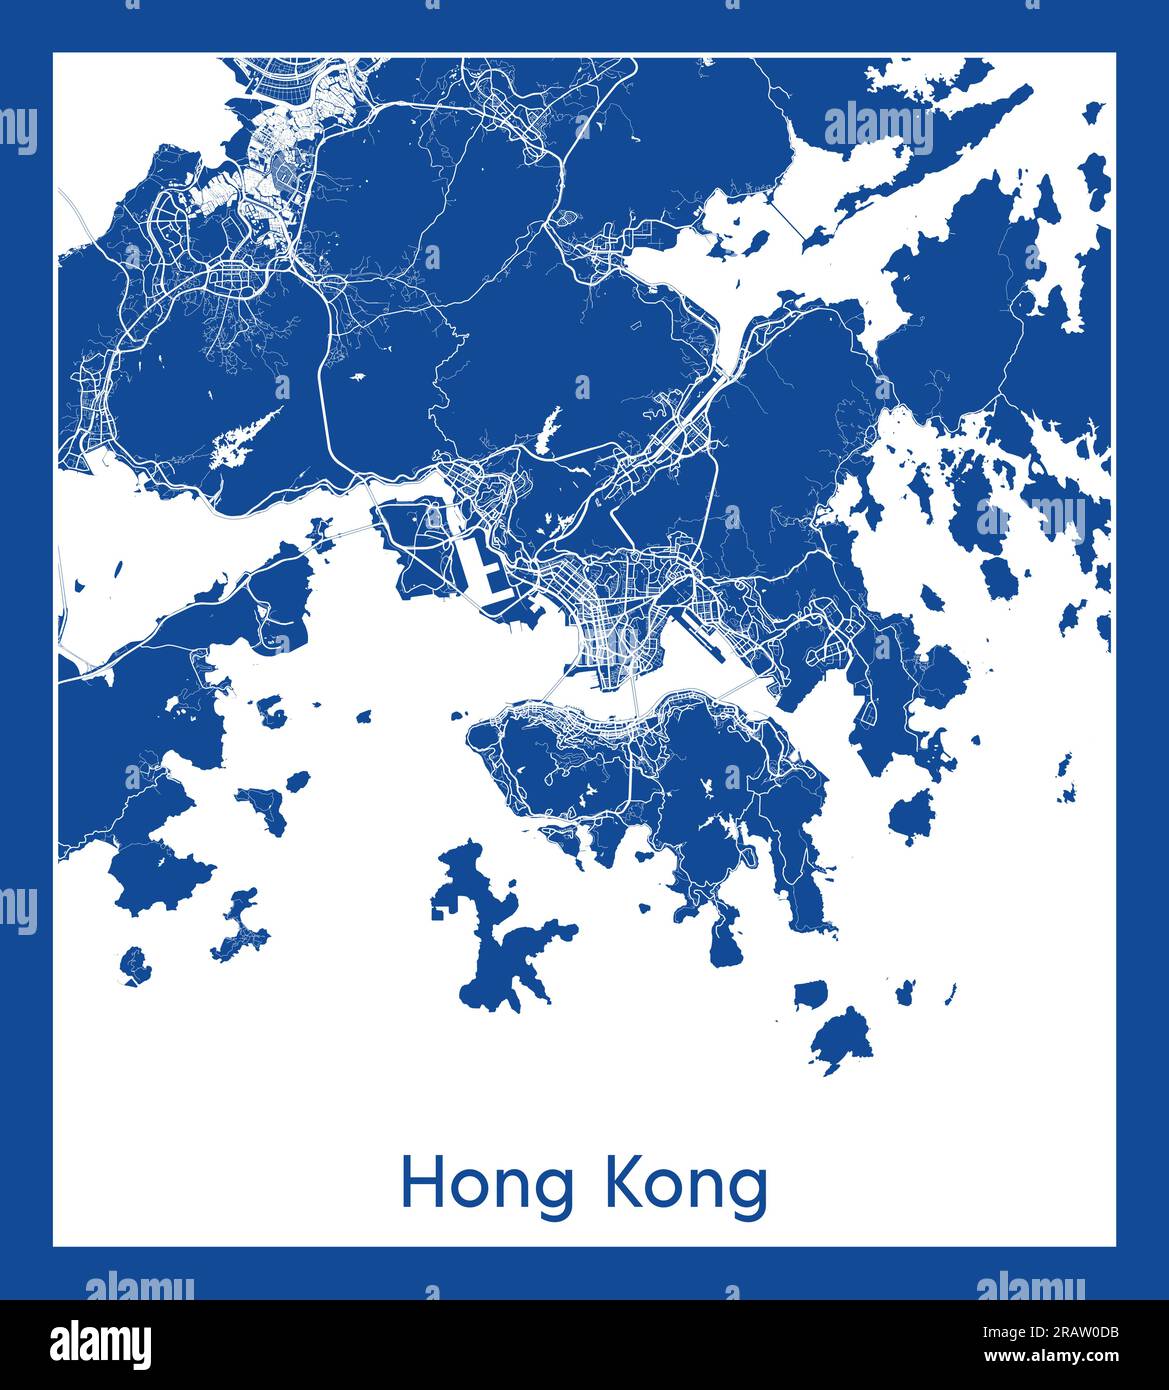 Hong Kong China Asia City map blue print vector illustration Stock Vector